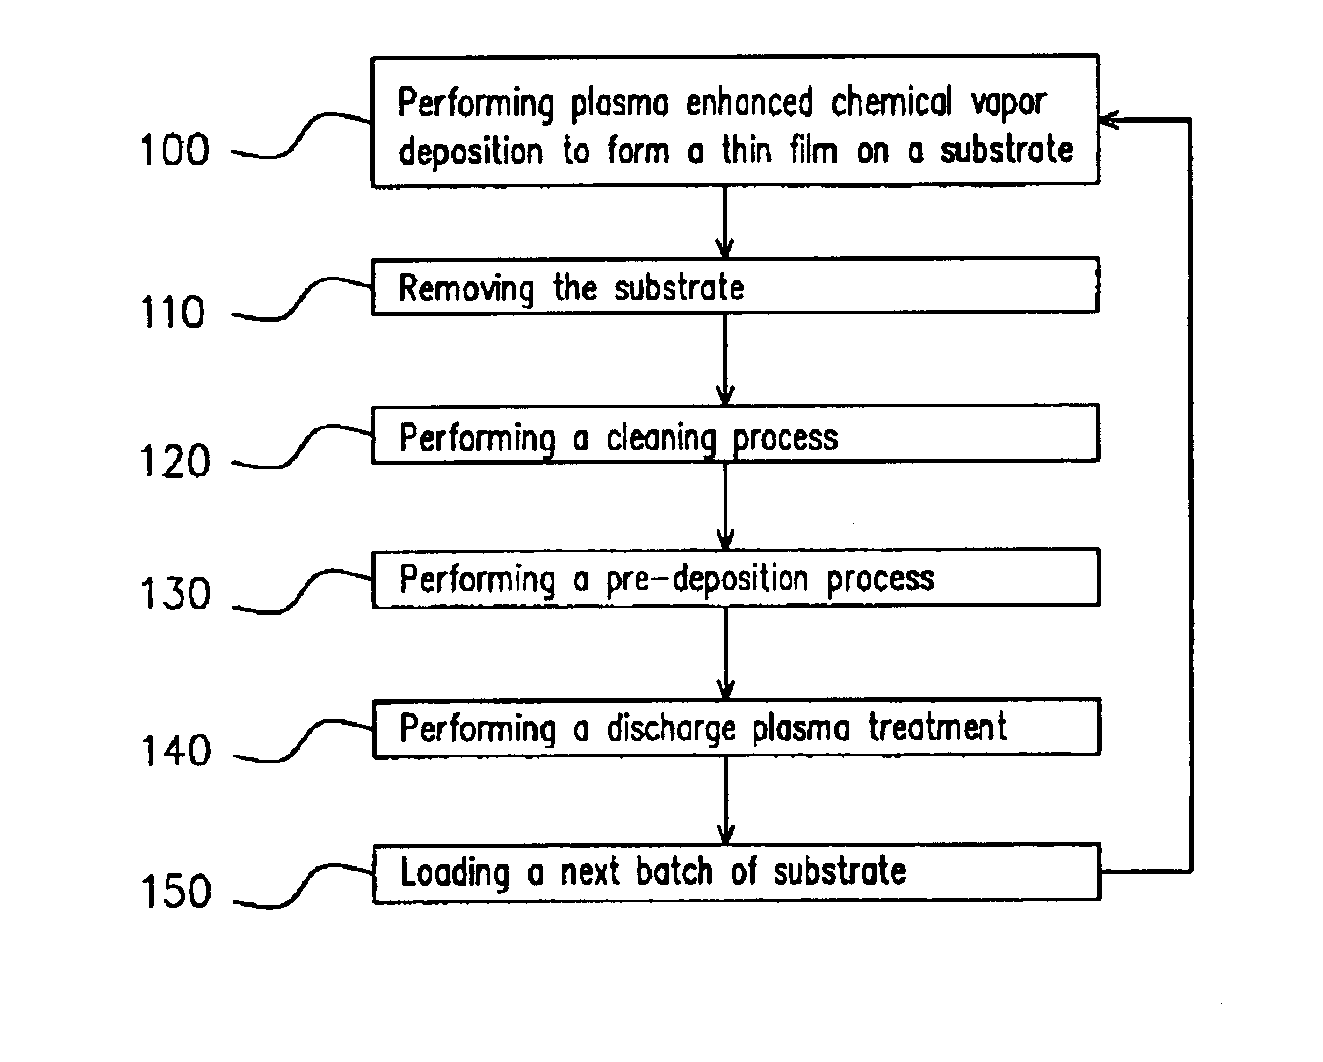 Method for depositing thin film using plasma chemical vapor deposition